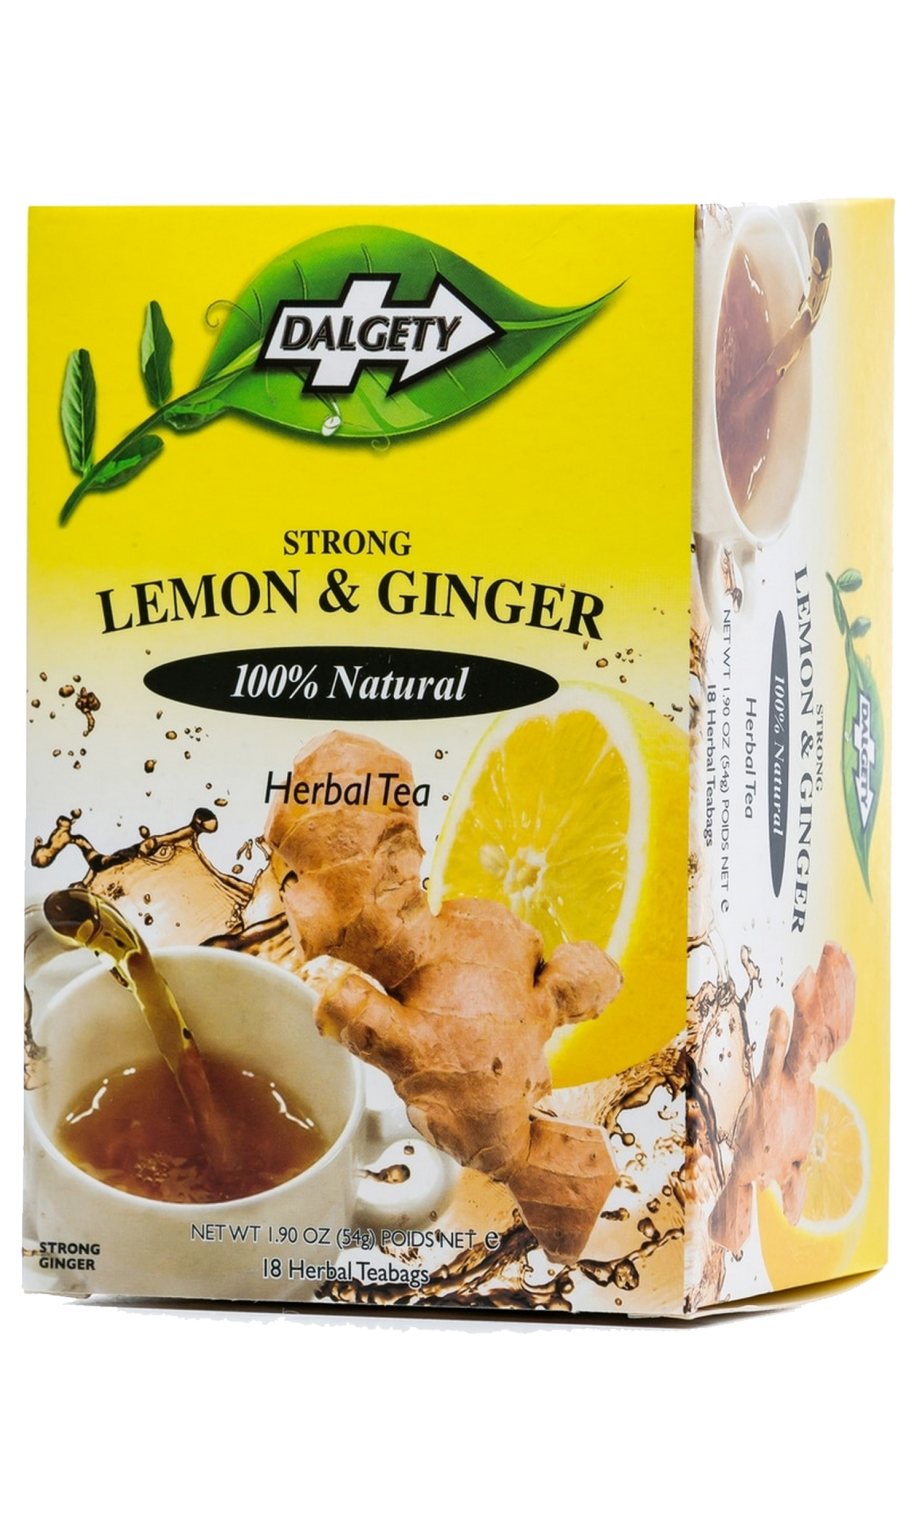 Dalgety Lemon And Ginger Tea Jumbo Uk Ltd 6872